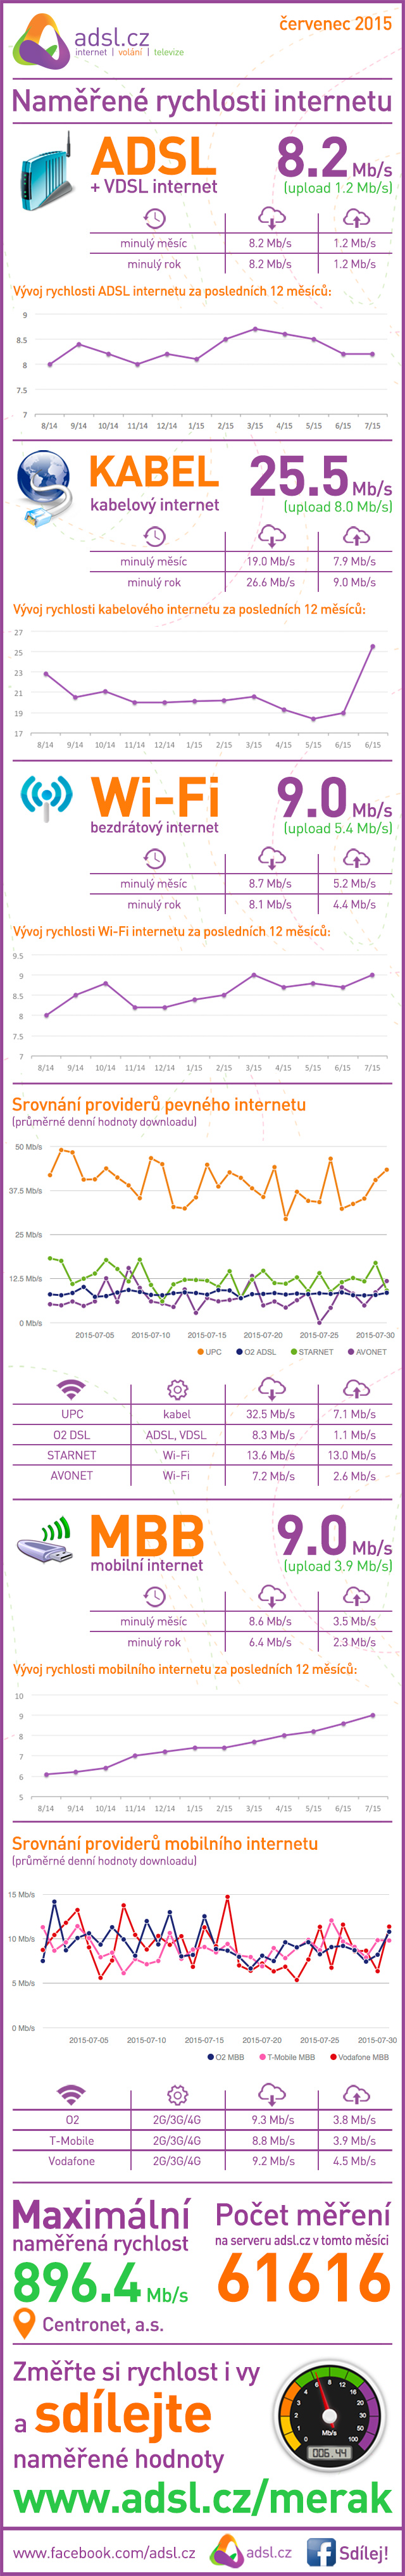 Rychlost internetu za červenec 2015